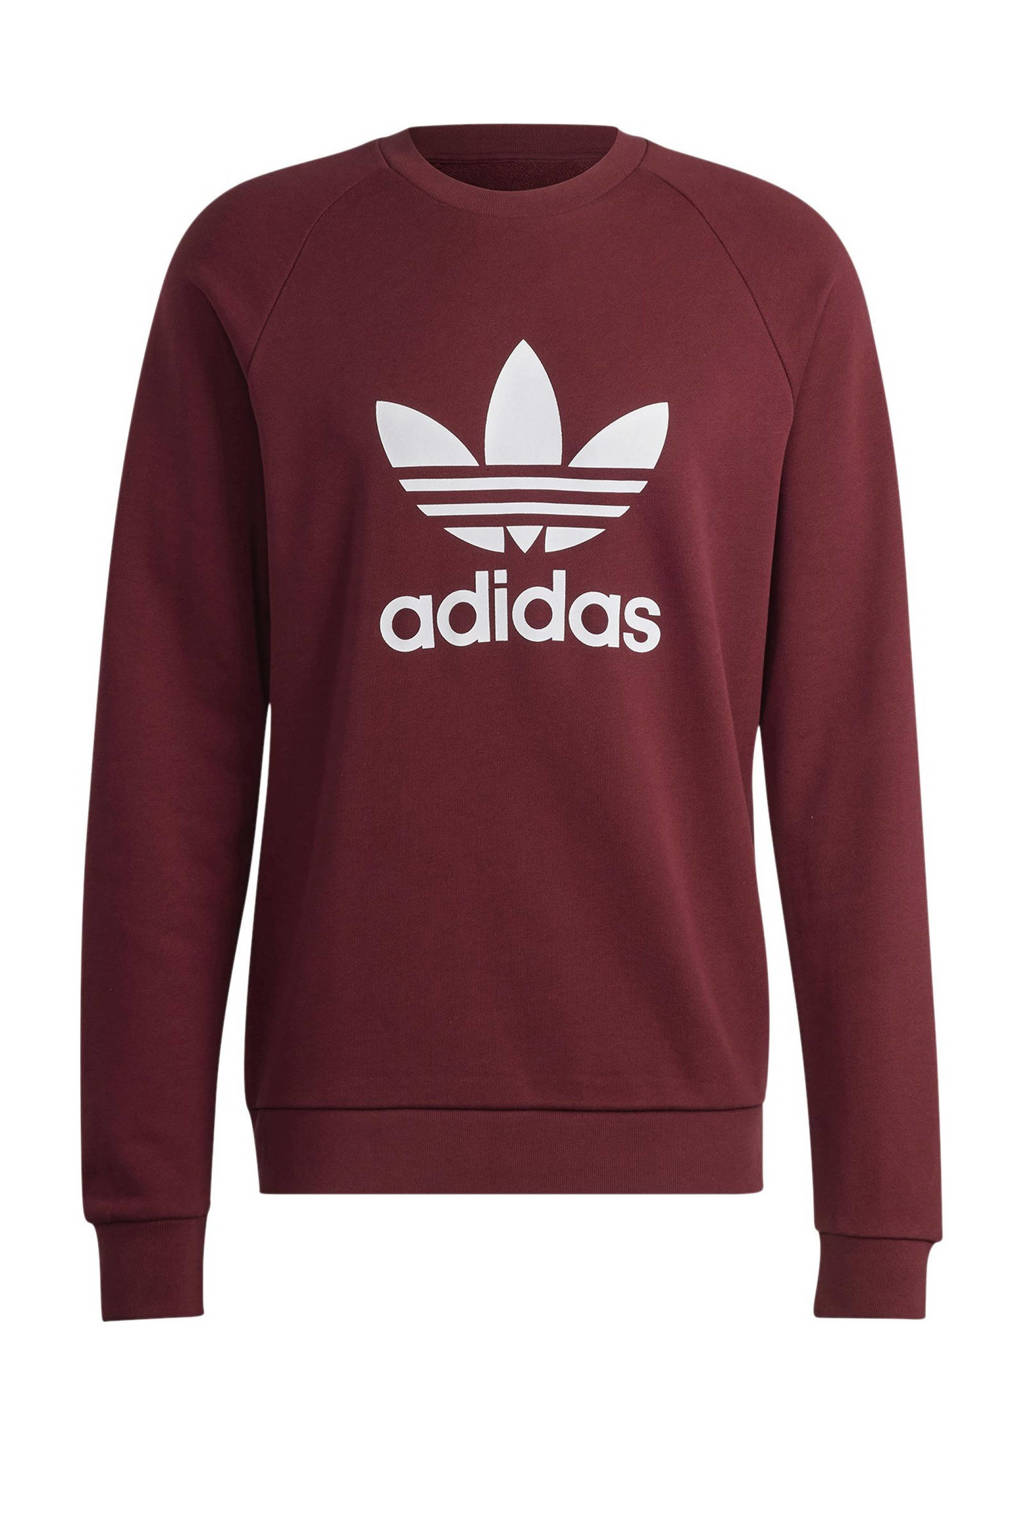 hoogtepunt Vel Tijdreeksen adidas Originals sweater donkerrood | wehkamp